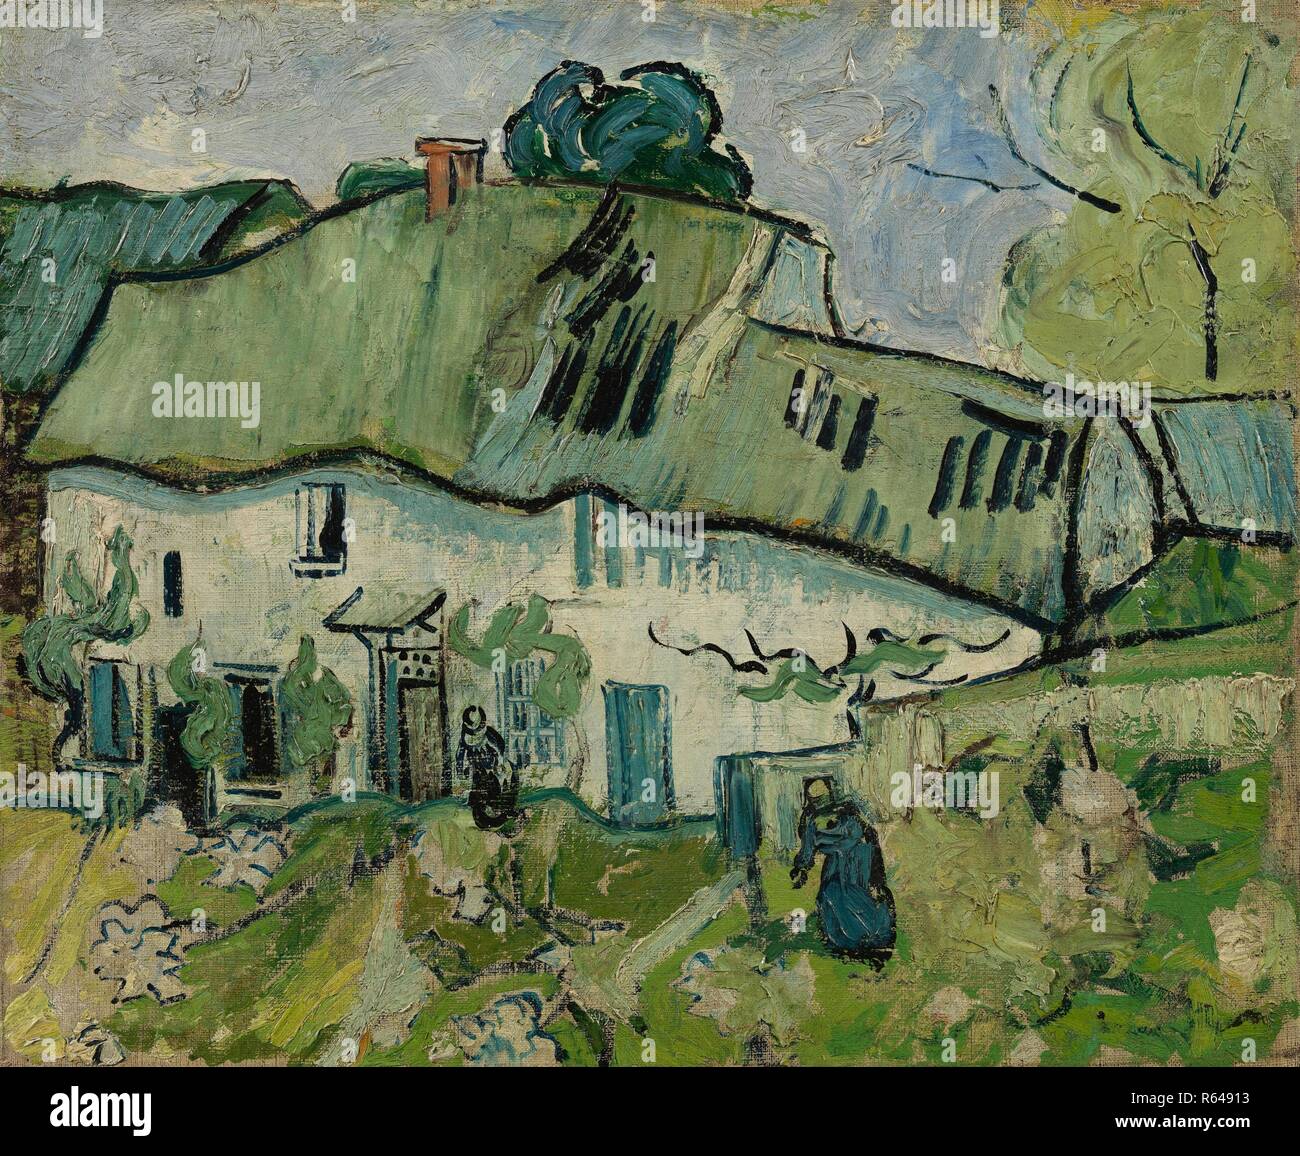 Bauernhaus. Datum: Mai-Juni 1890, Auvers-sur-Oise. Abmessungen: 38,9 cm x 46,4 cm, 53,6 cm x 61,7 cm. Museum: Van Gogh Museum, Amsterdam. Autor: Van Gogh, Vincent. VINCENT VAN GOGH. Stockfoto